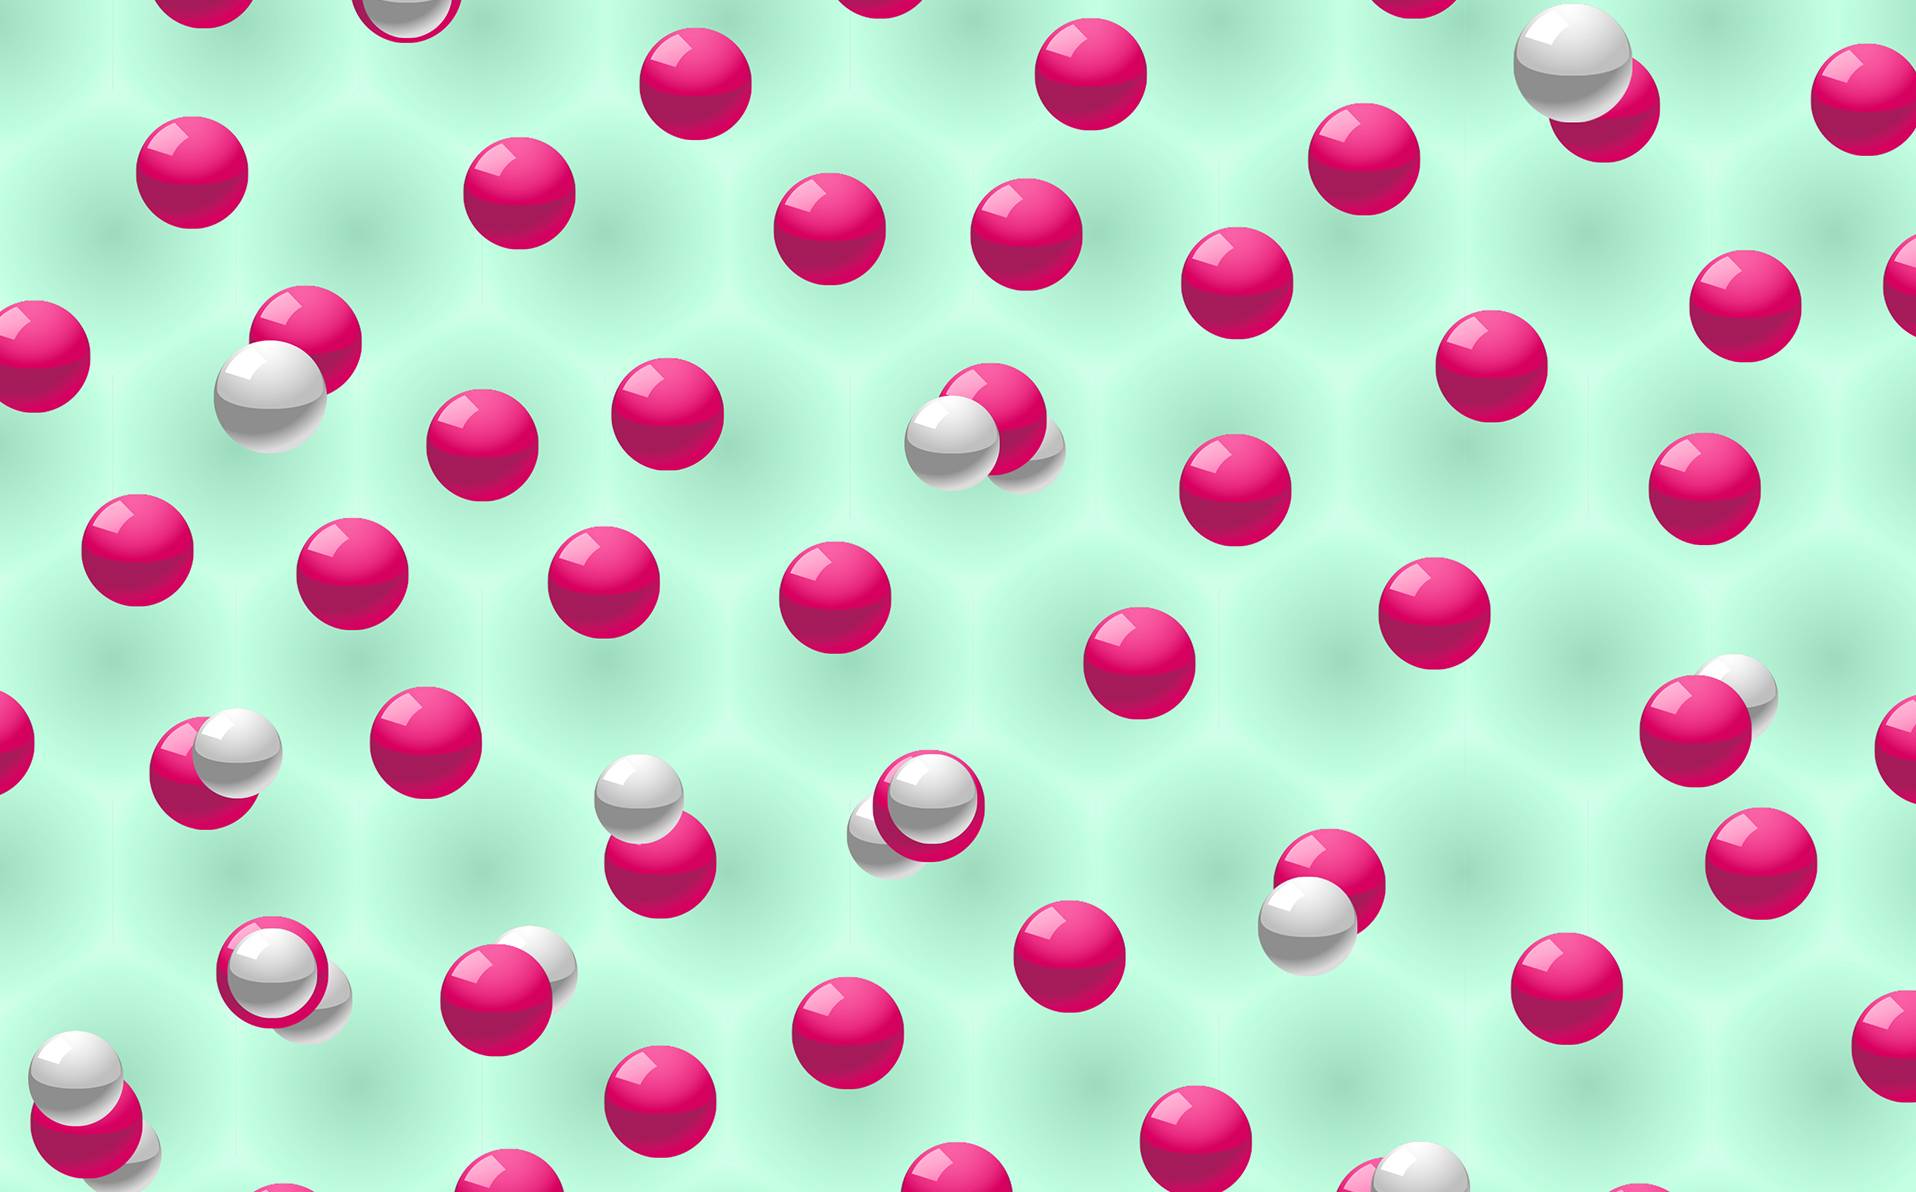 illustration de molécules